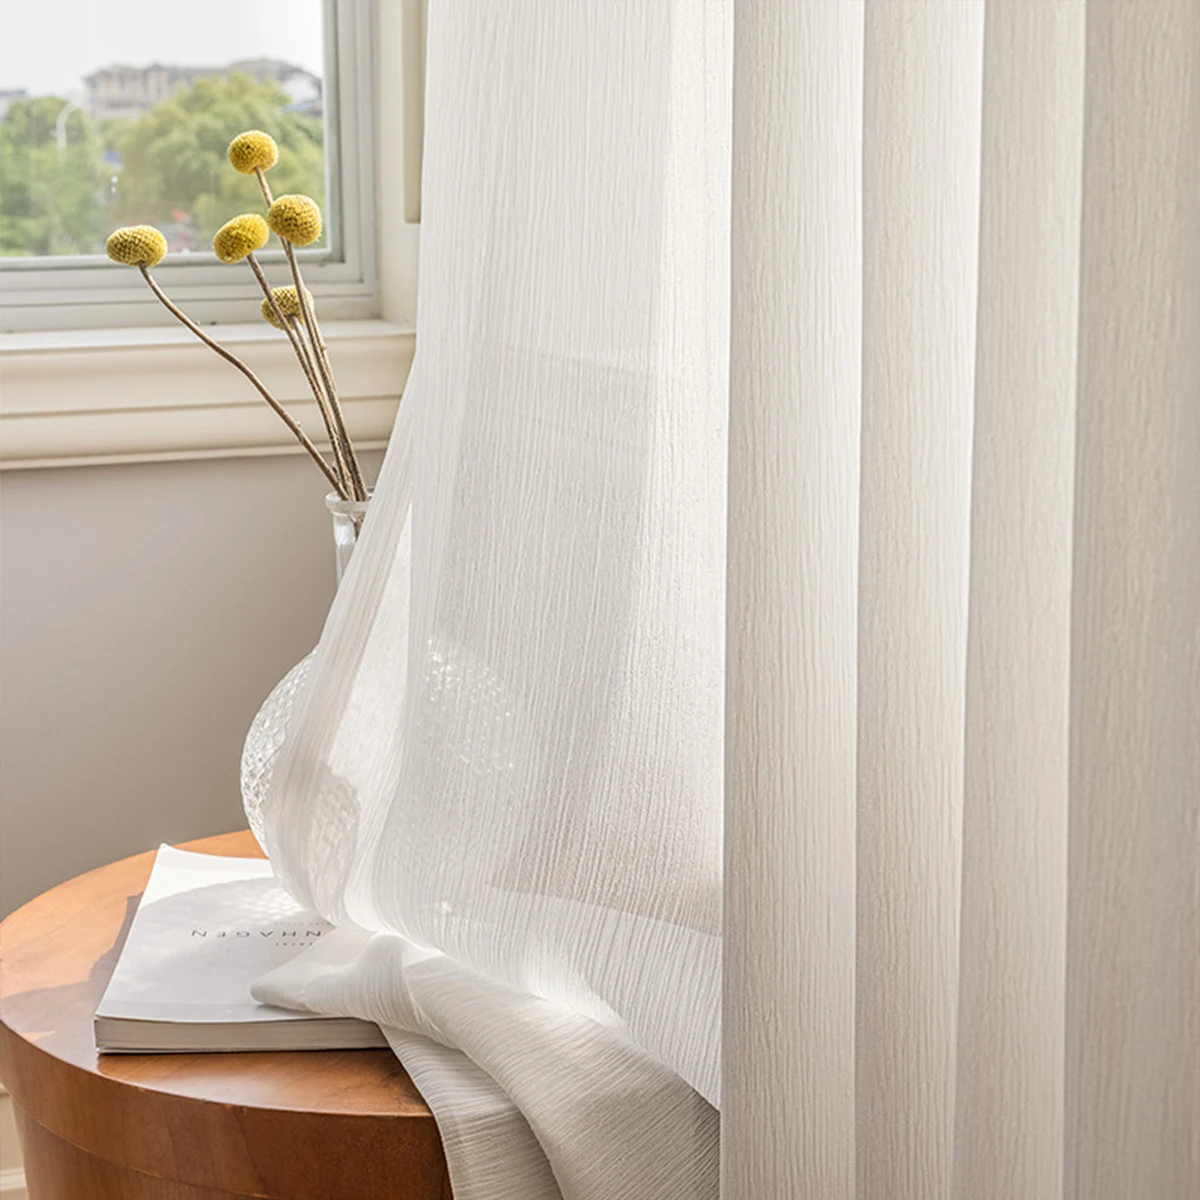 

1 панель в японском стиле плиссированная текстура против царапин и против крючка шелковая штора из марли для спальни и гостиной